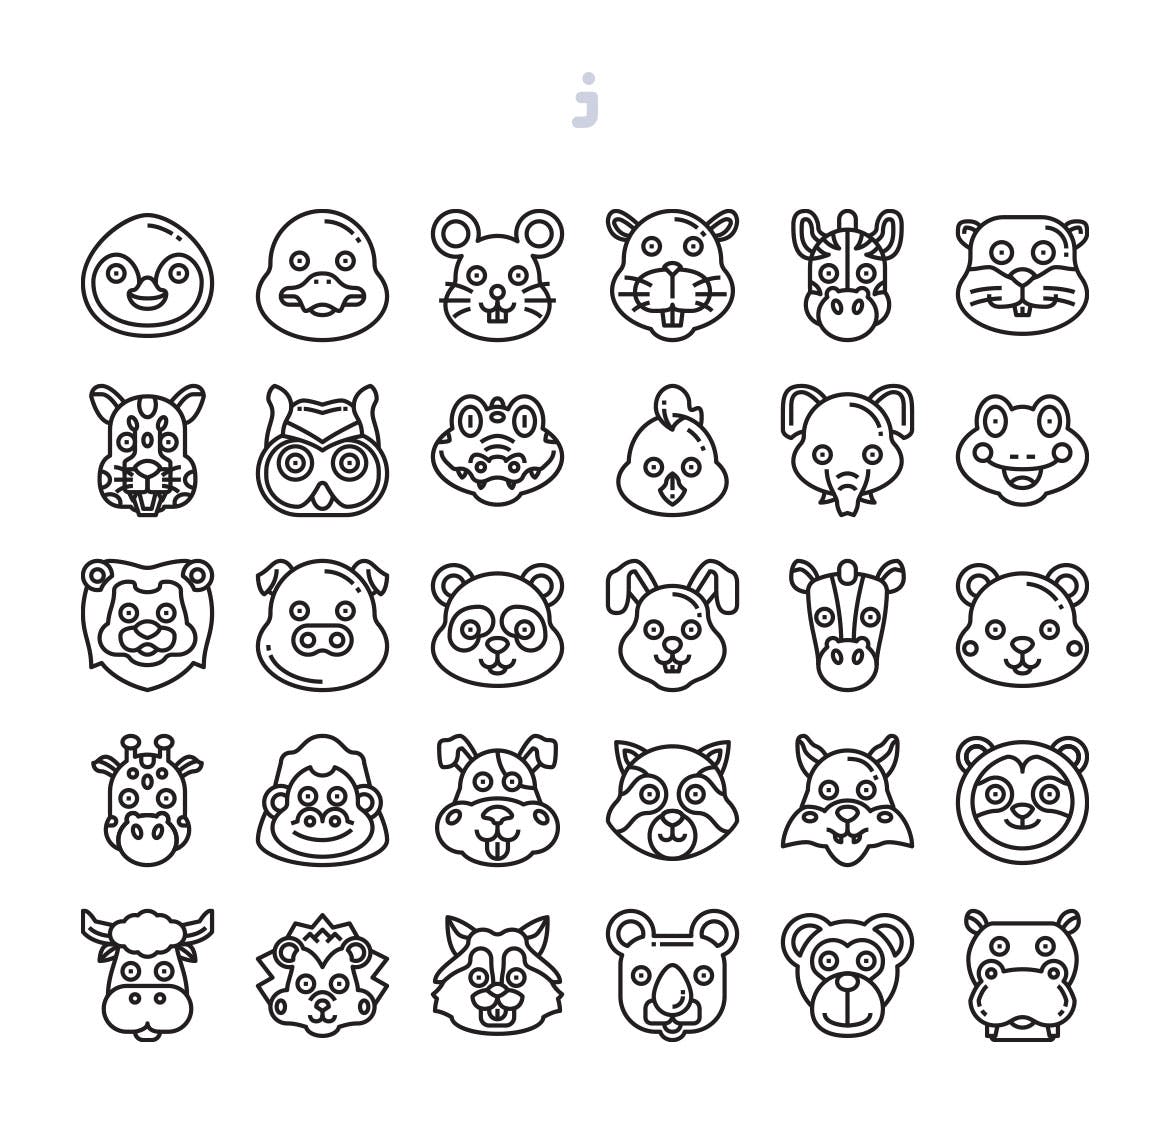 30枚动物手绘卡通头像彩色矢量图标 30 Animal Avatar Icons插图(2)